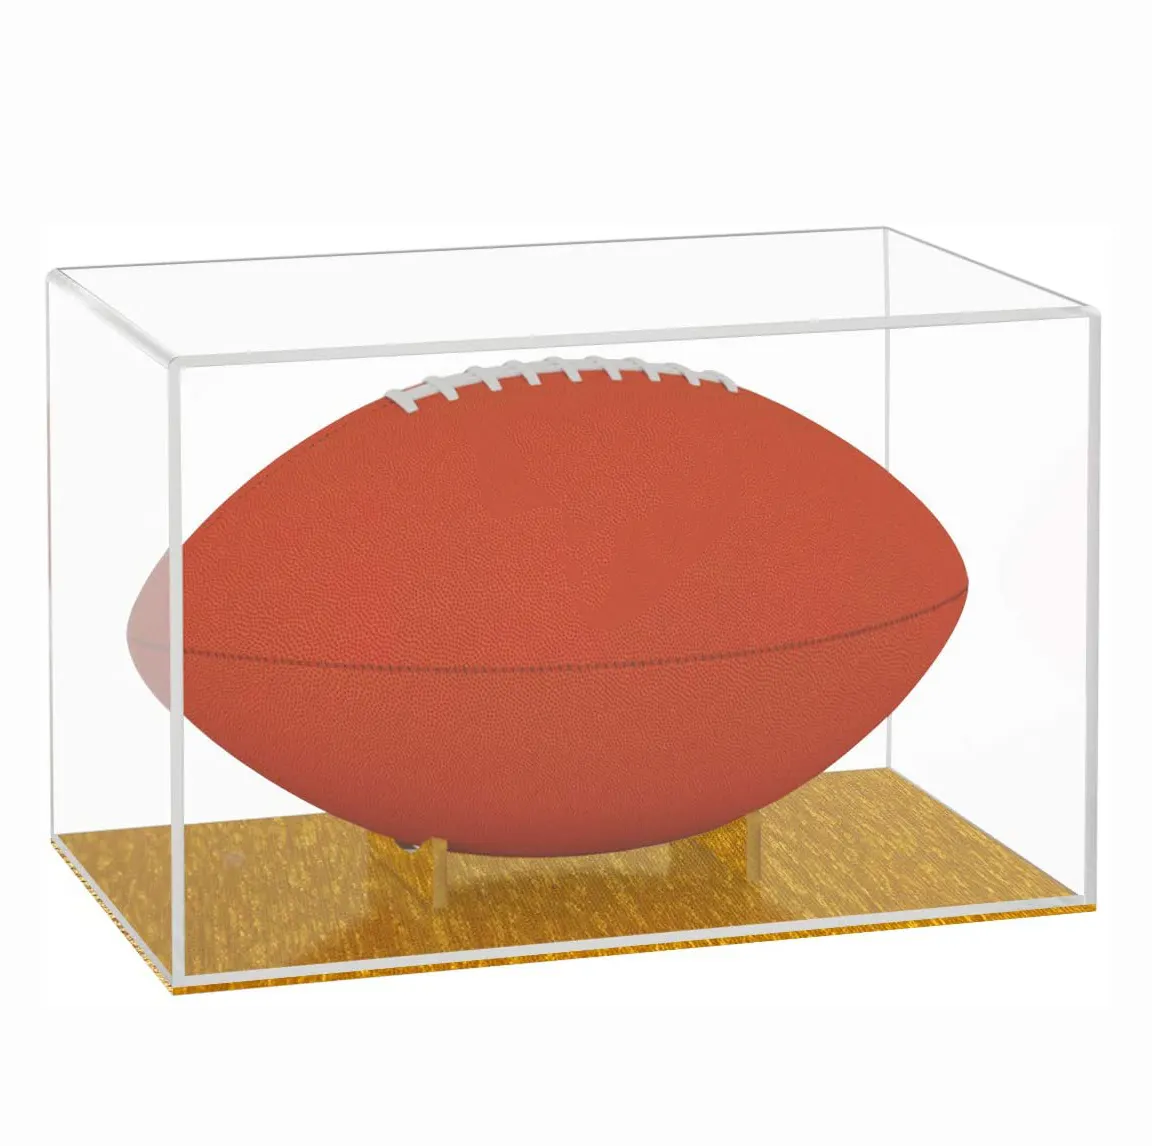 ดีลักซ์อเนกประสงค์ยูวีคริลิคผลิตภัณฑ์กีฬาแสดงกล่อง Risers ยืนฟุตบอลกรณีการแสดงผลที่มีฐานไม้